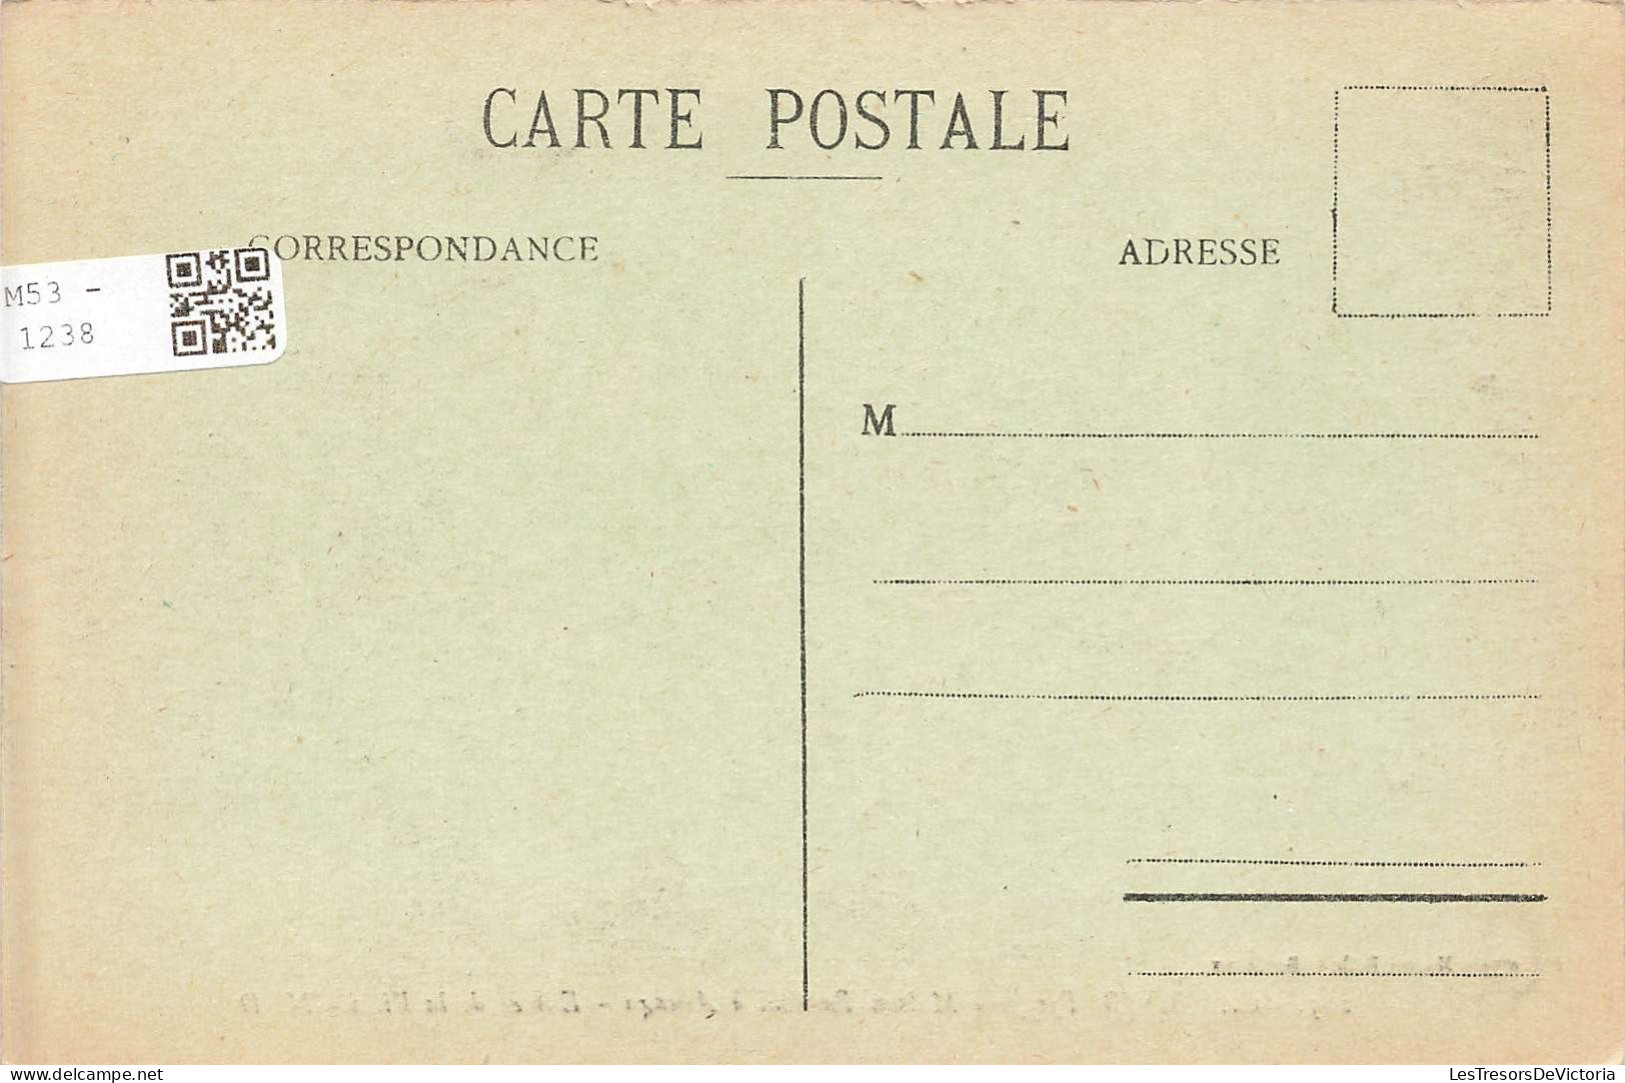 FRANCE - Cambo (B Pyr) - Vue Sur La Maison Rostand à Arnaga - Entrée De La Villa - M D - Carte Postale Ancienne - Cambo-les-Bains